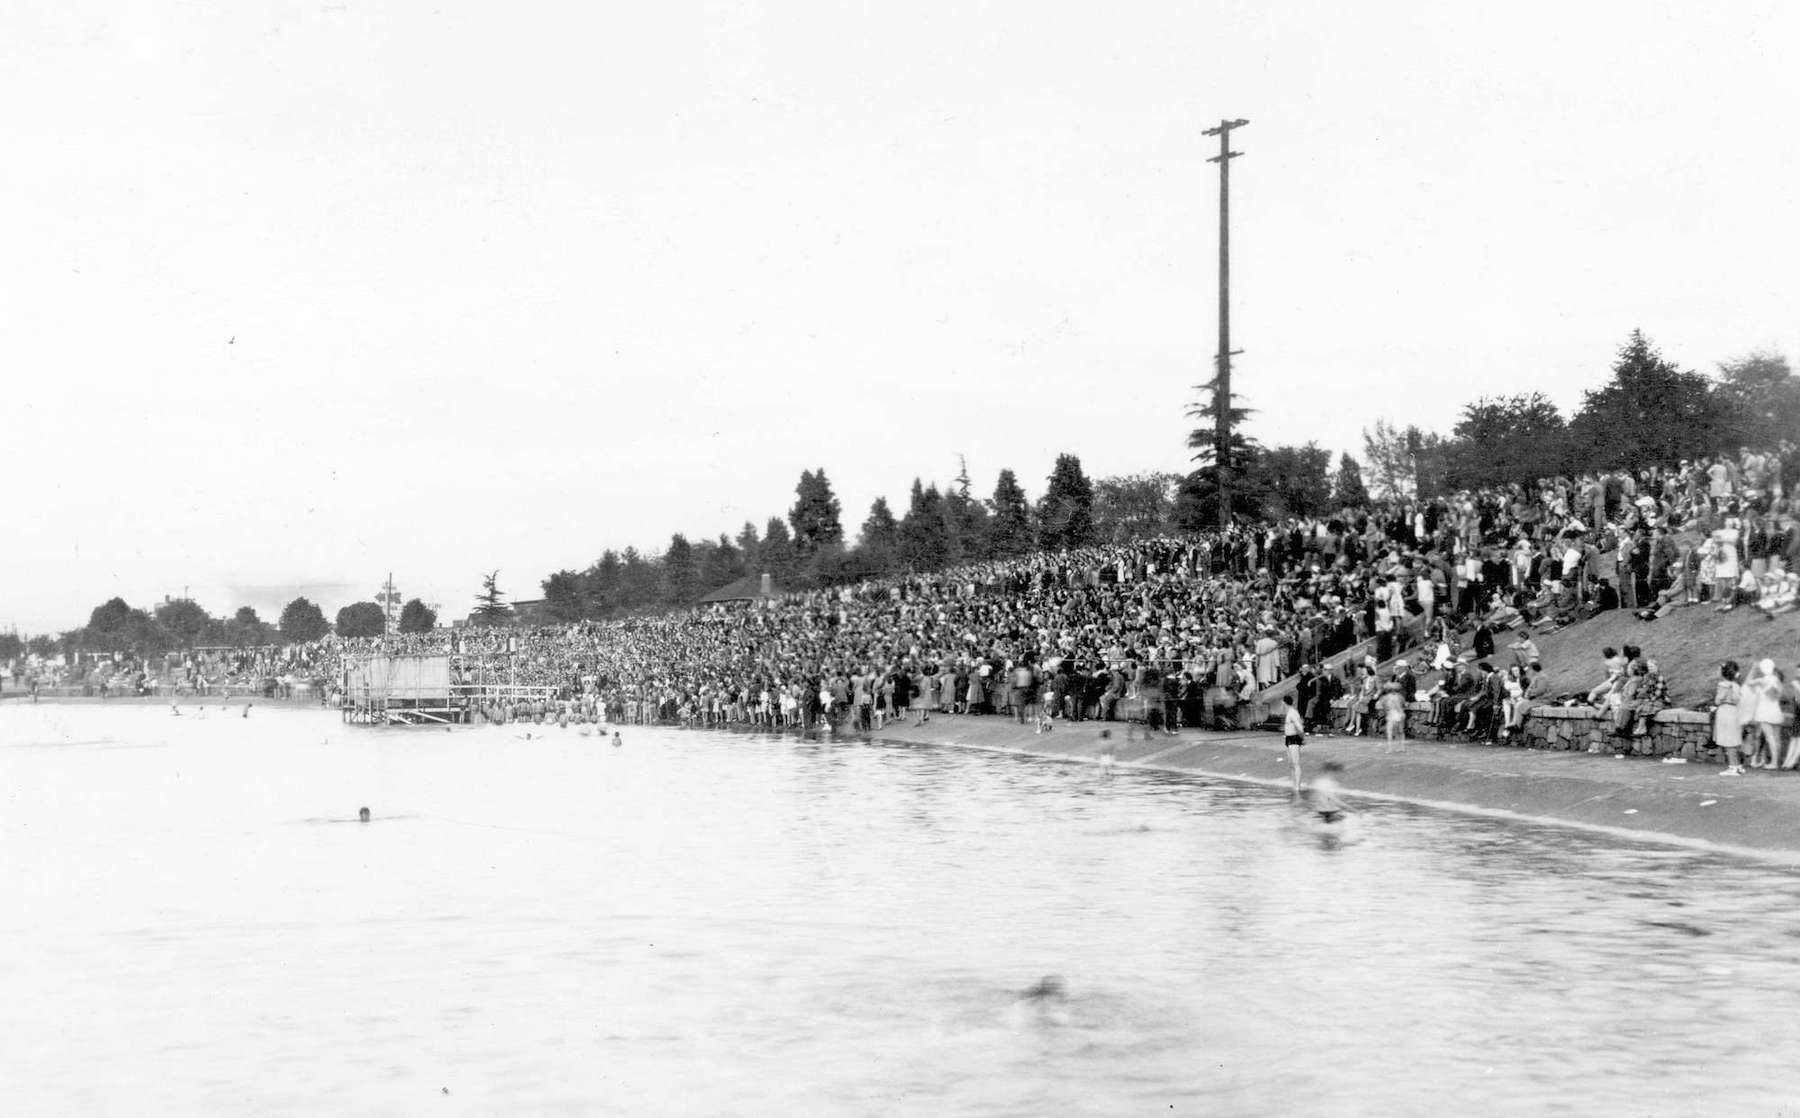 1946 - Crowds at a concert at Kitsilano pool